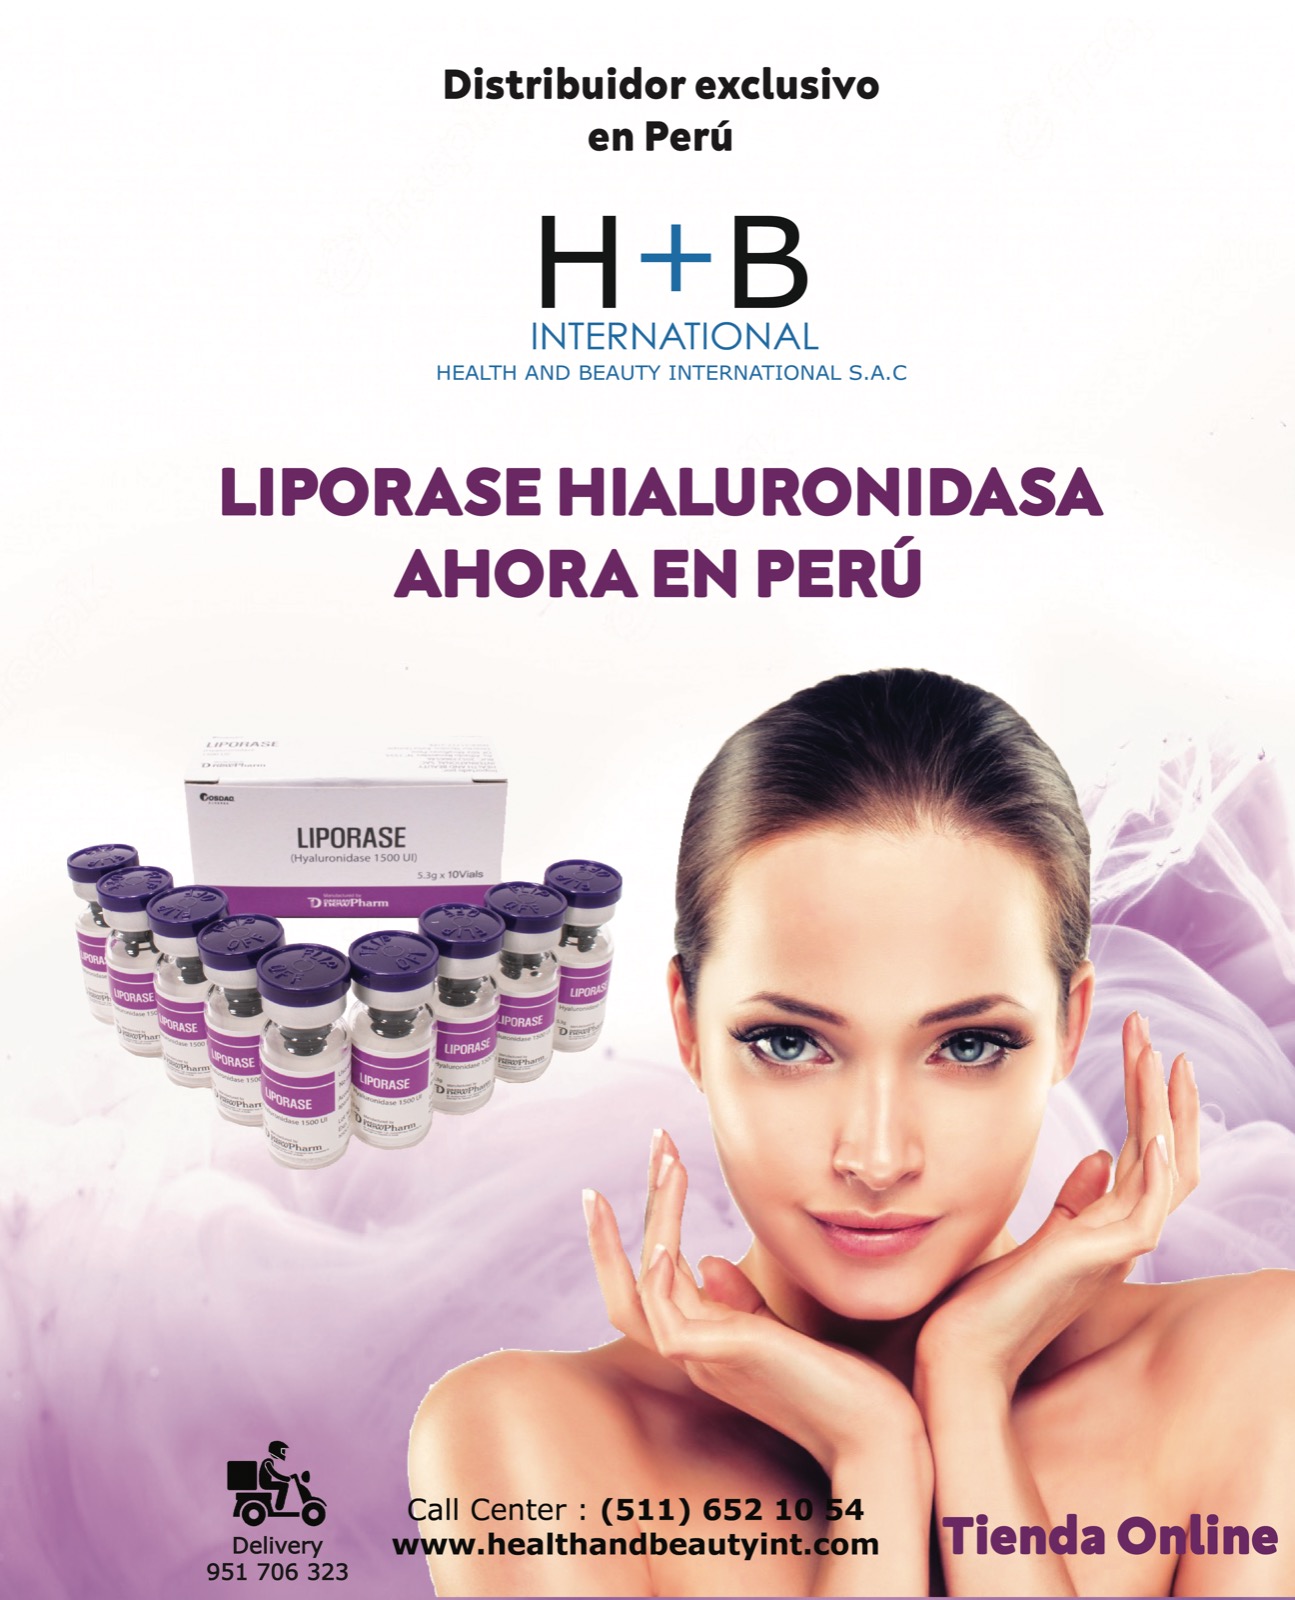 Hialuronidasa Liporase en el Perú - HEALTH AND BEAUTY INTERNATIONAL